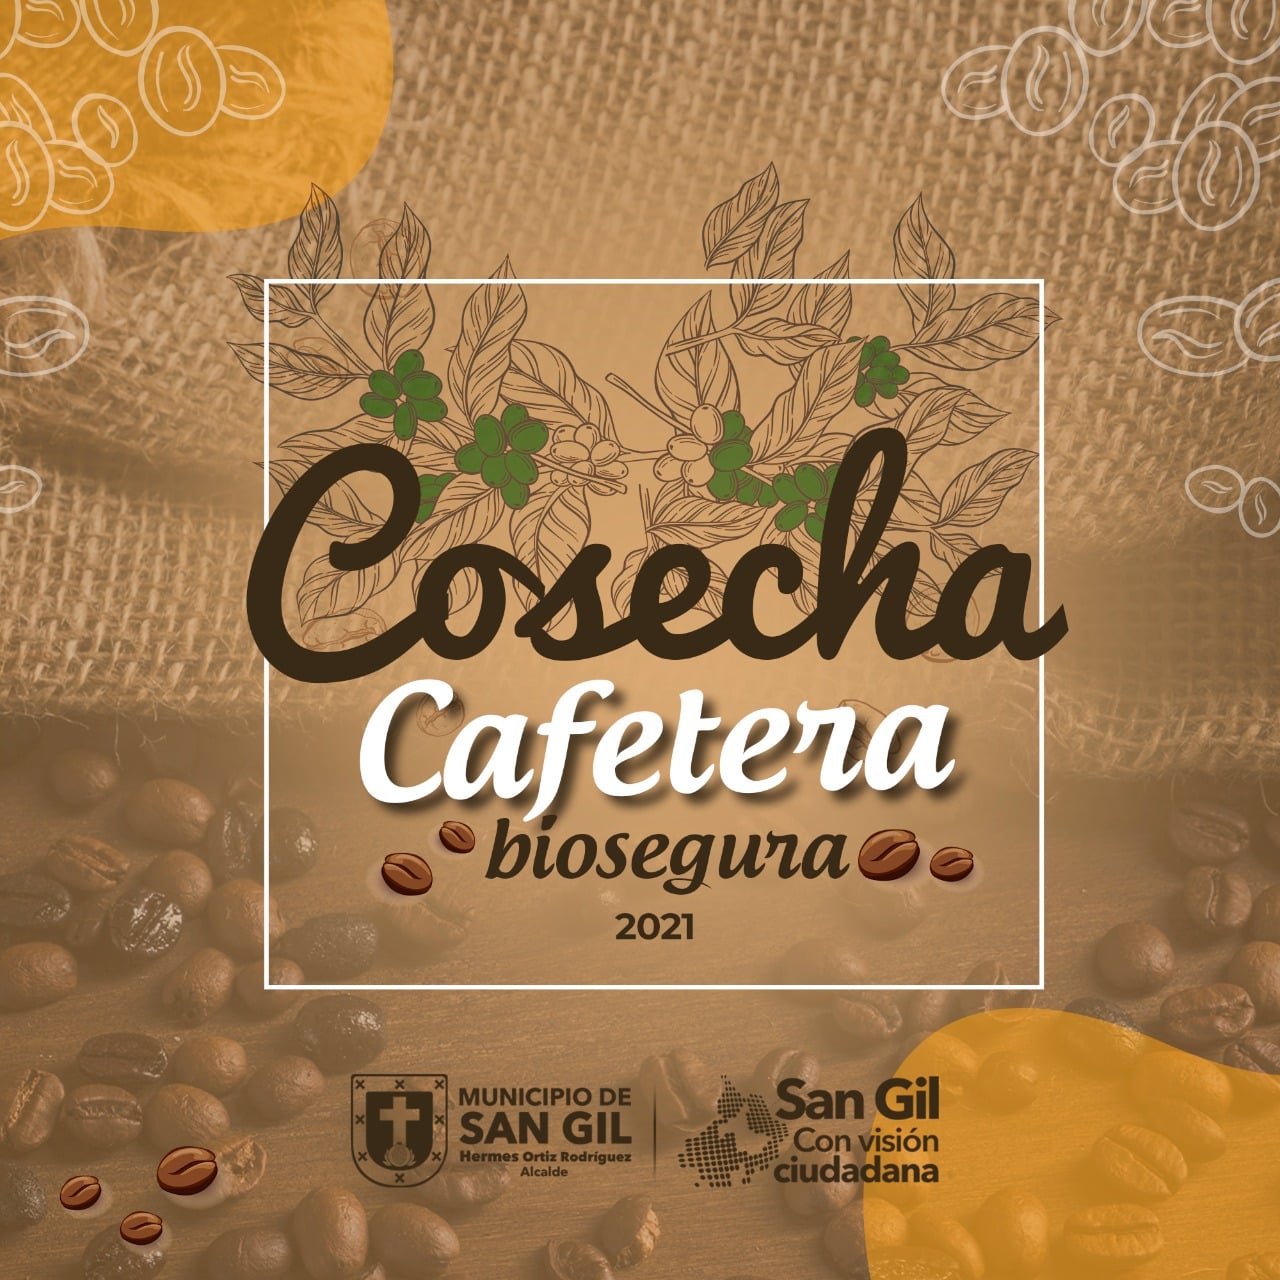 Cosecha Cafetera biosegura 2021